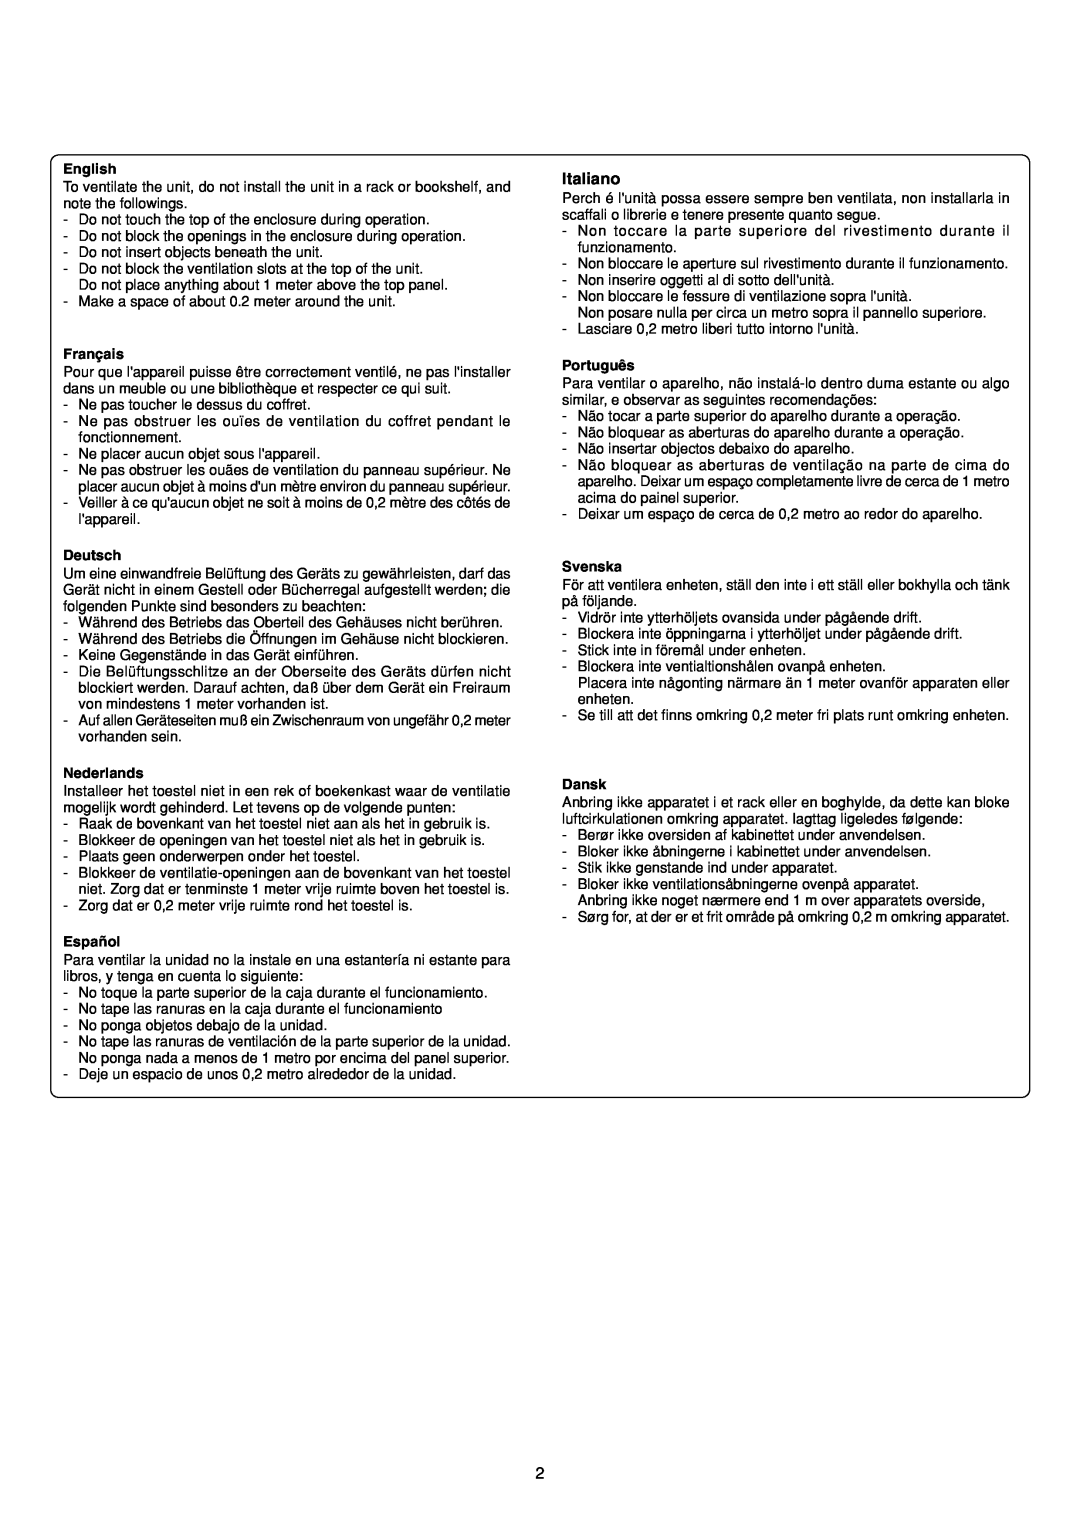 Marantz PM7200 manual English, Français, Deutsch, Nederlands, Español, Português, Svenska, Dansk 